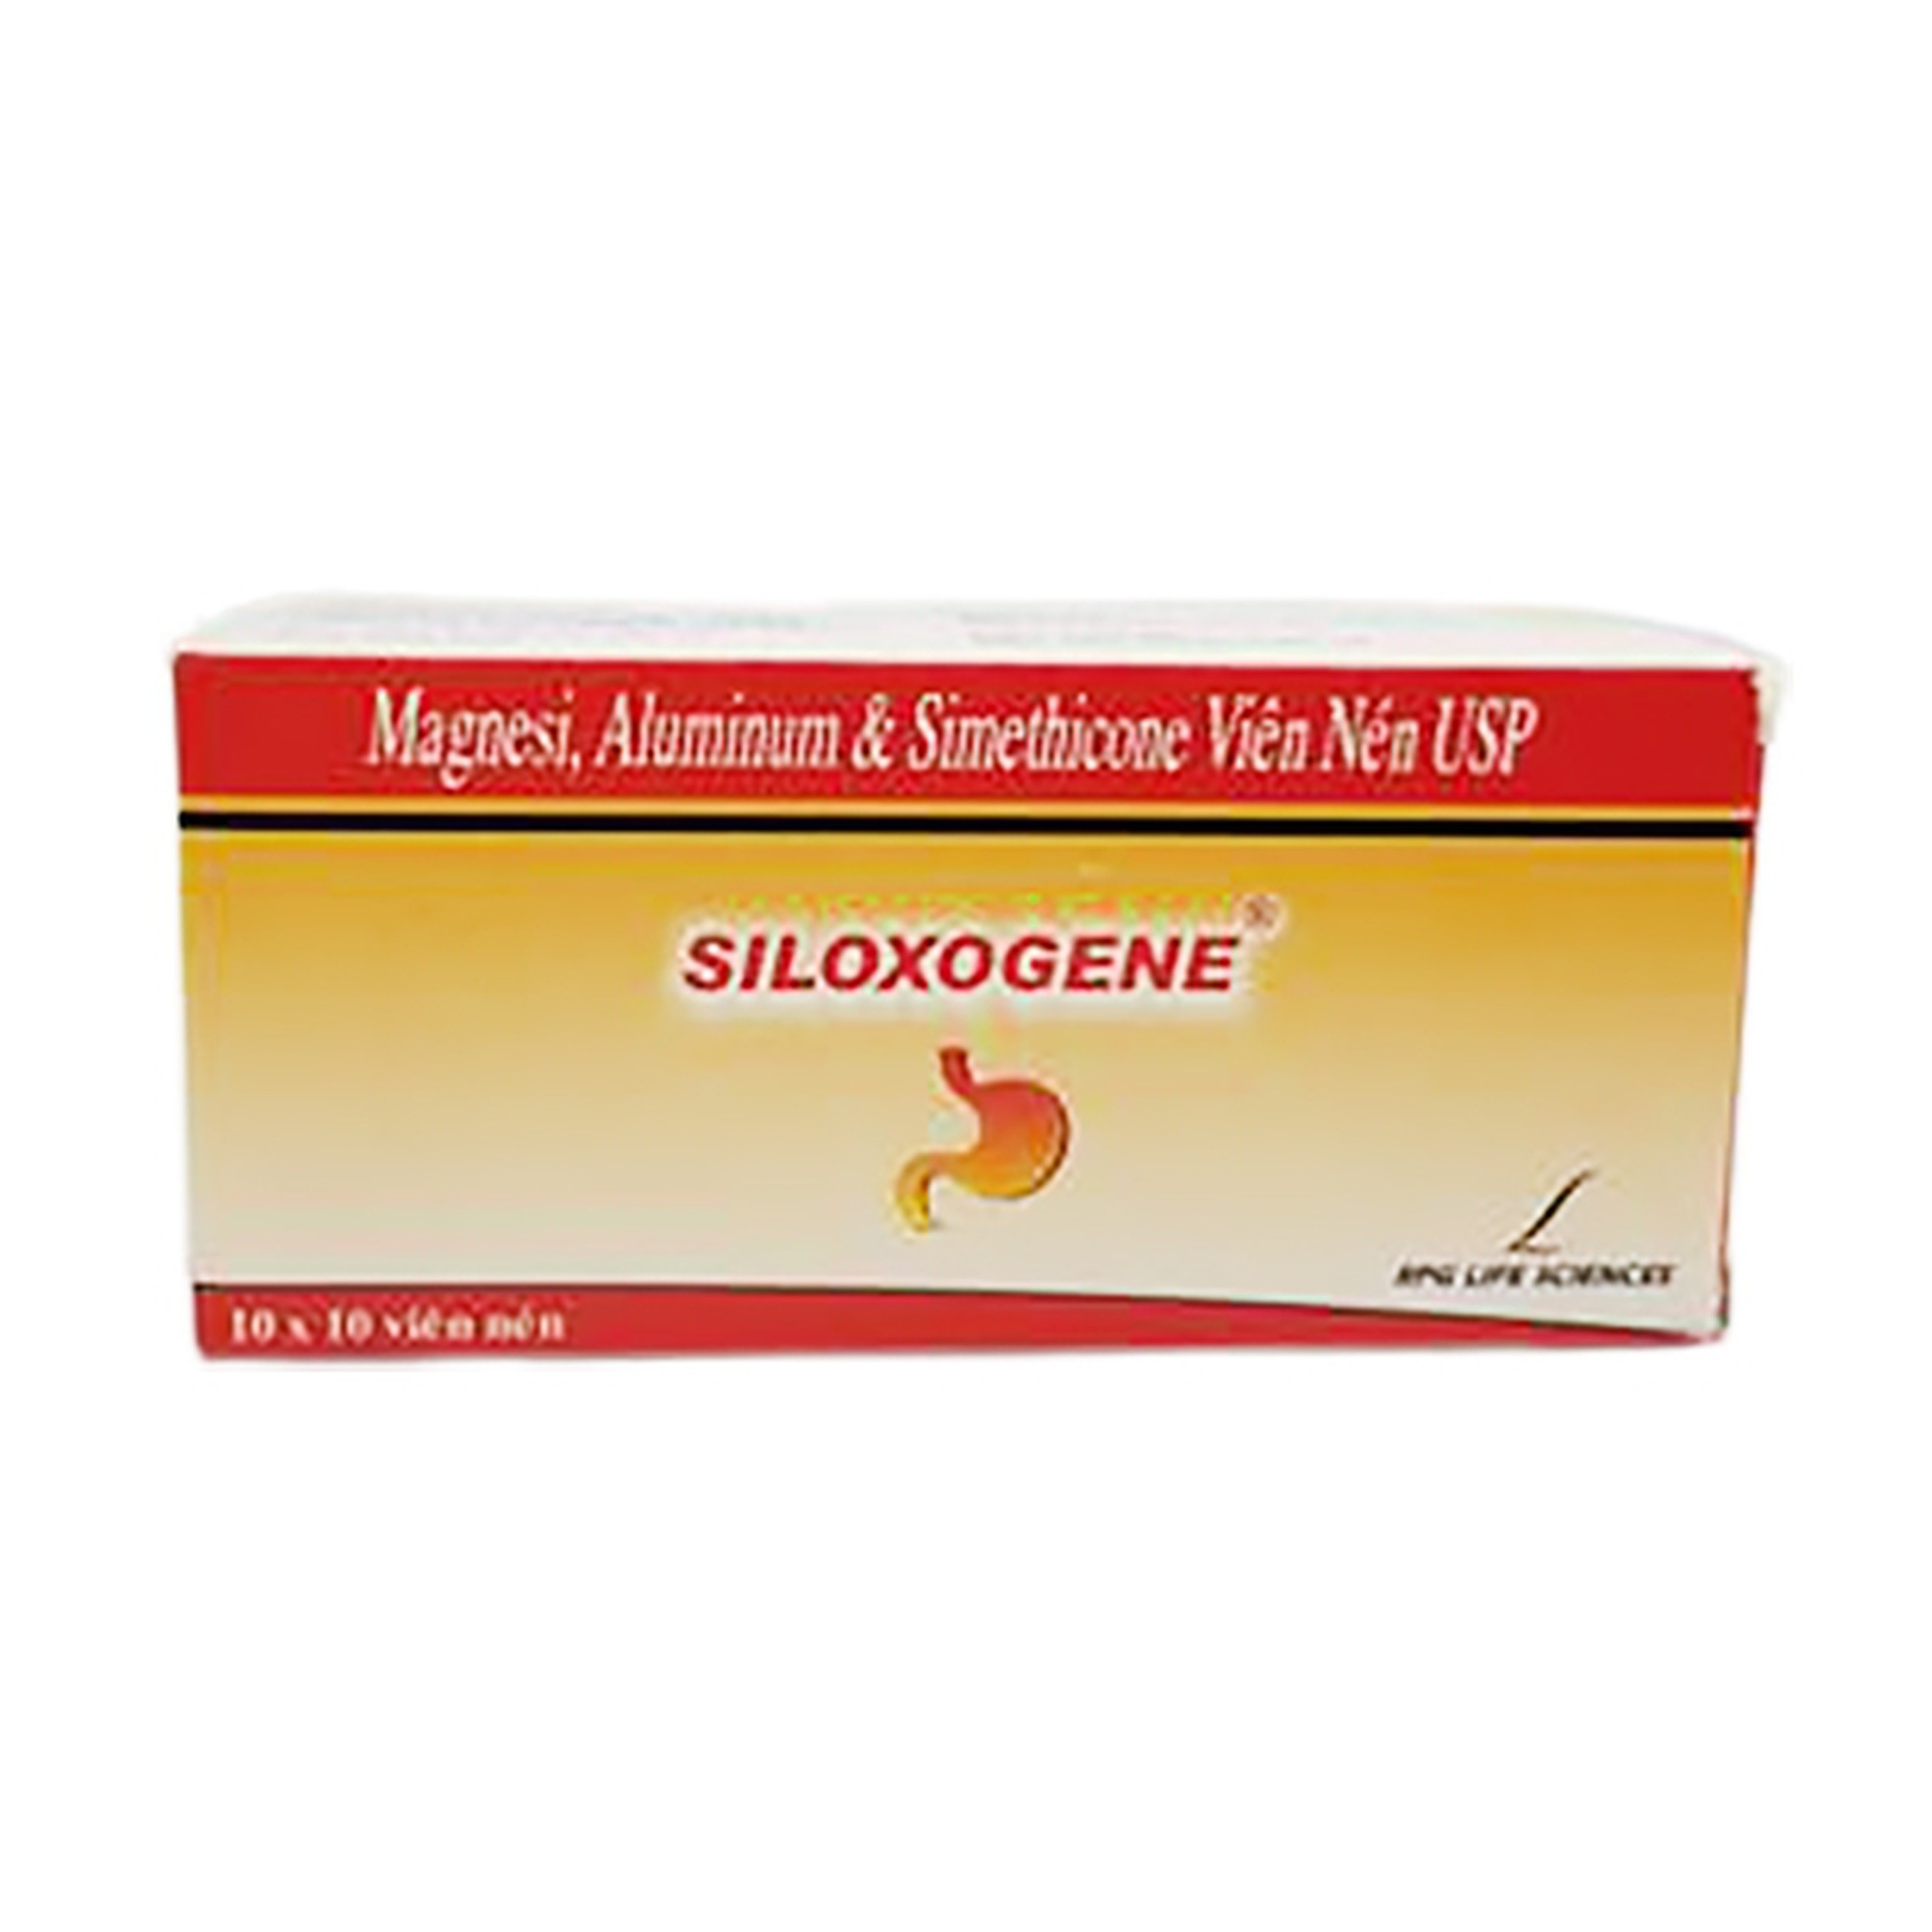 Thuốc Siloxogene RPG điều trị tăng tiết acid dạ dày (10 vỉ x 10 viên)